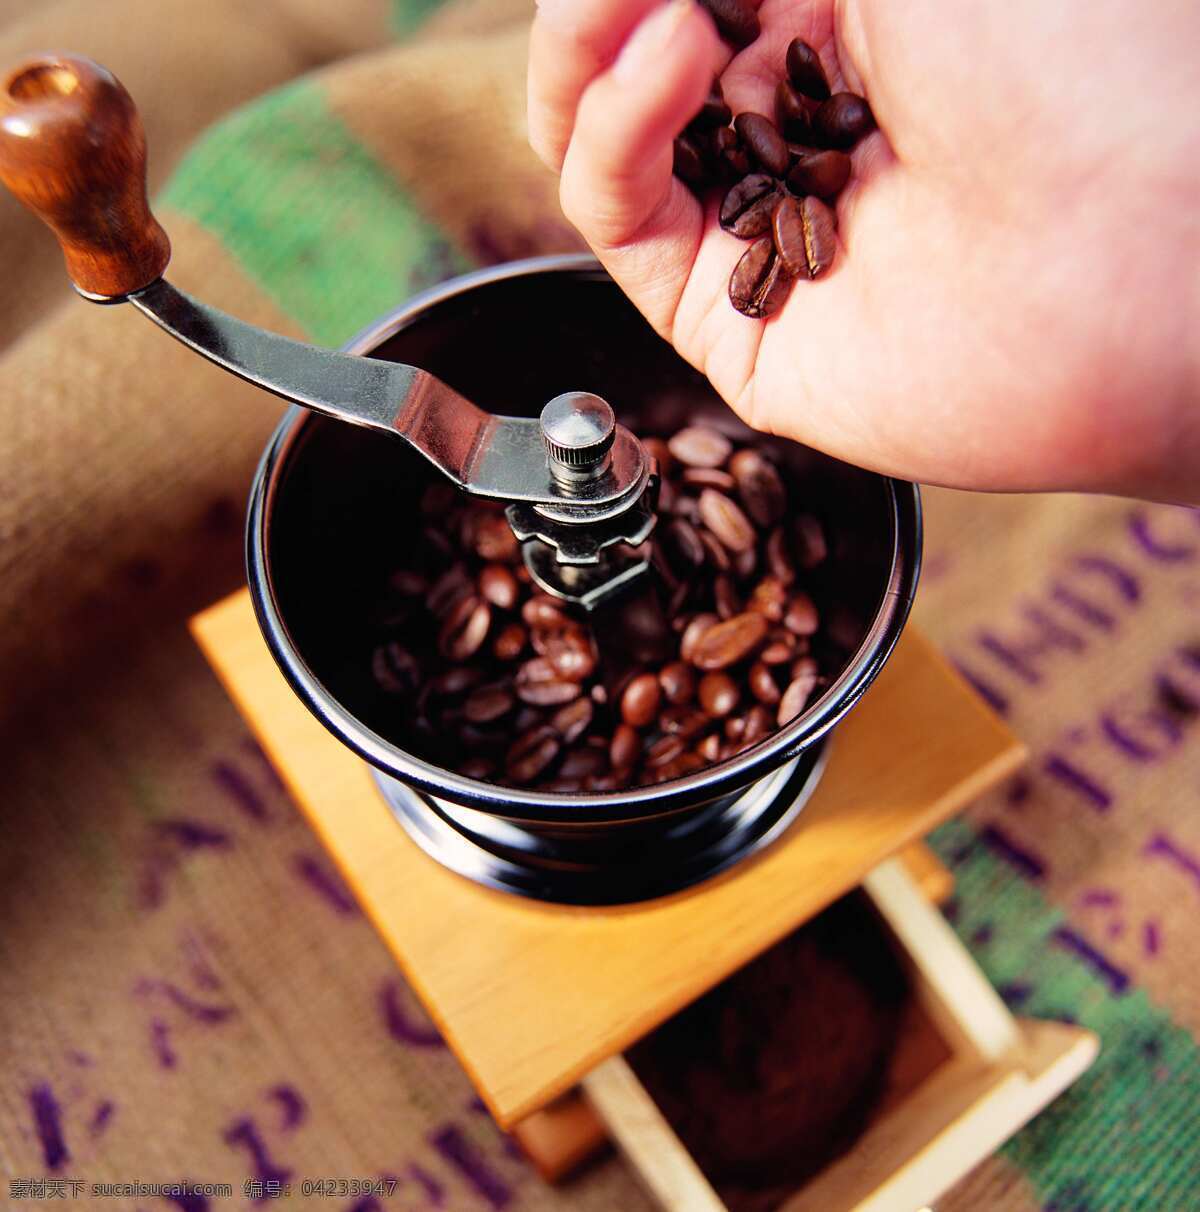 手工 咖啡 研磨 过程 添加 咖啡豆 咖啡种子 成熟的咖啡 研磨机 咖啡制作流程 风景 生活 旅游餐饮